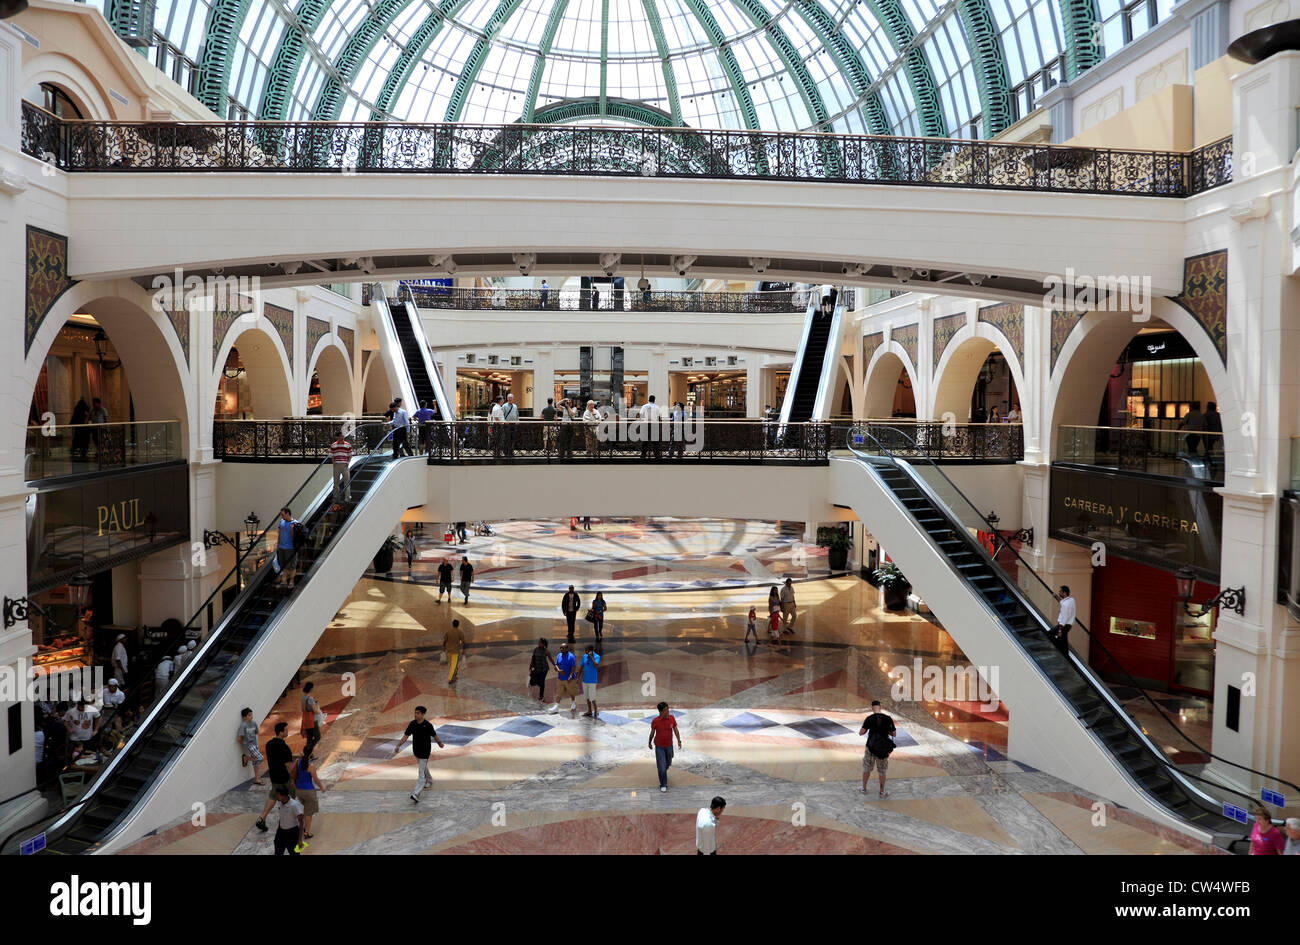 3643. Mall of the Emirates, Dubai, UAE. Stock Photo